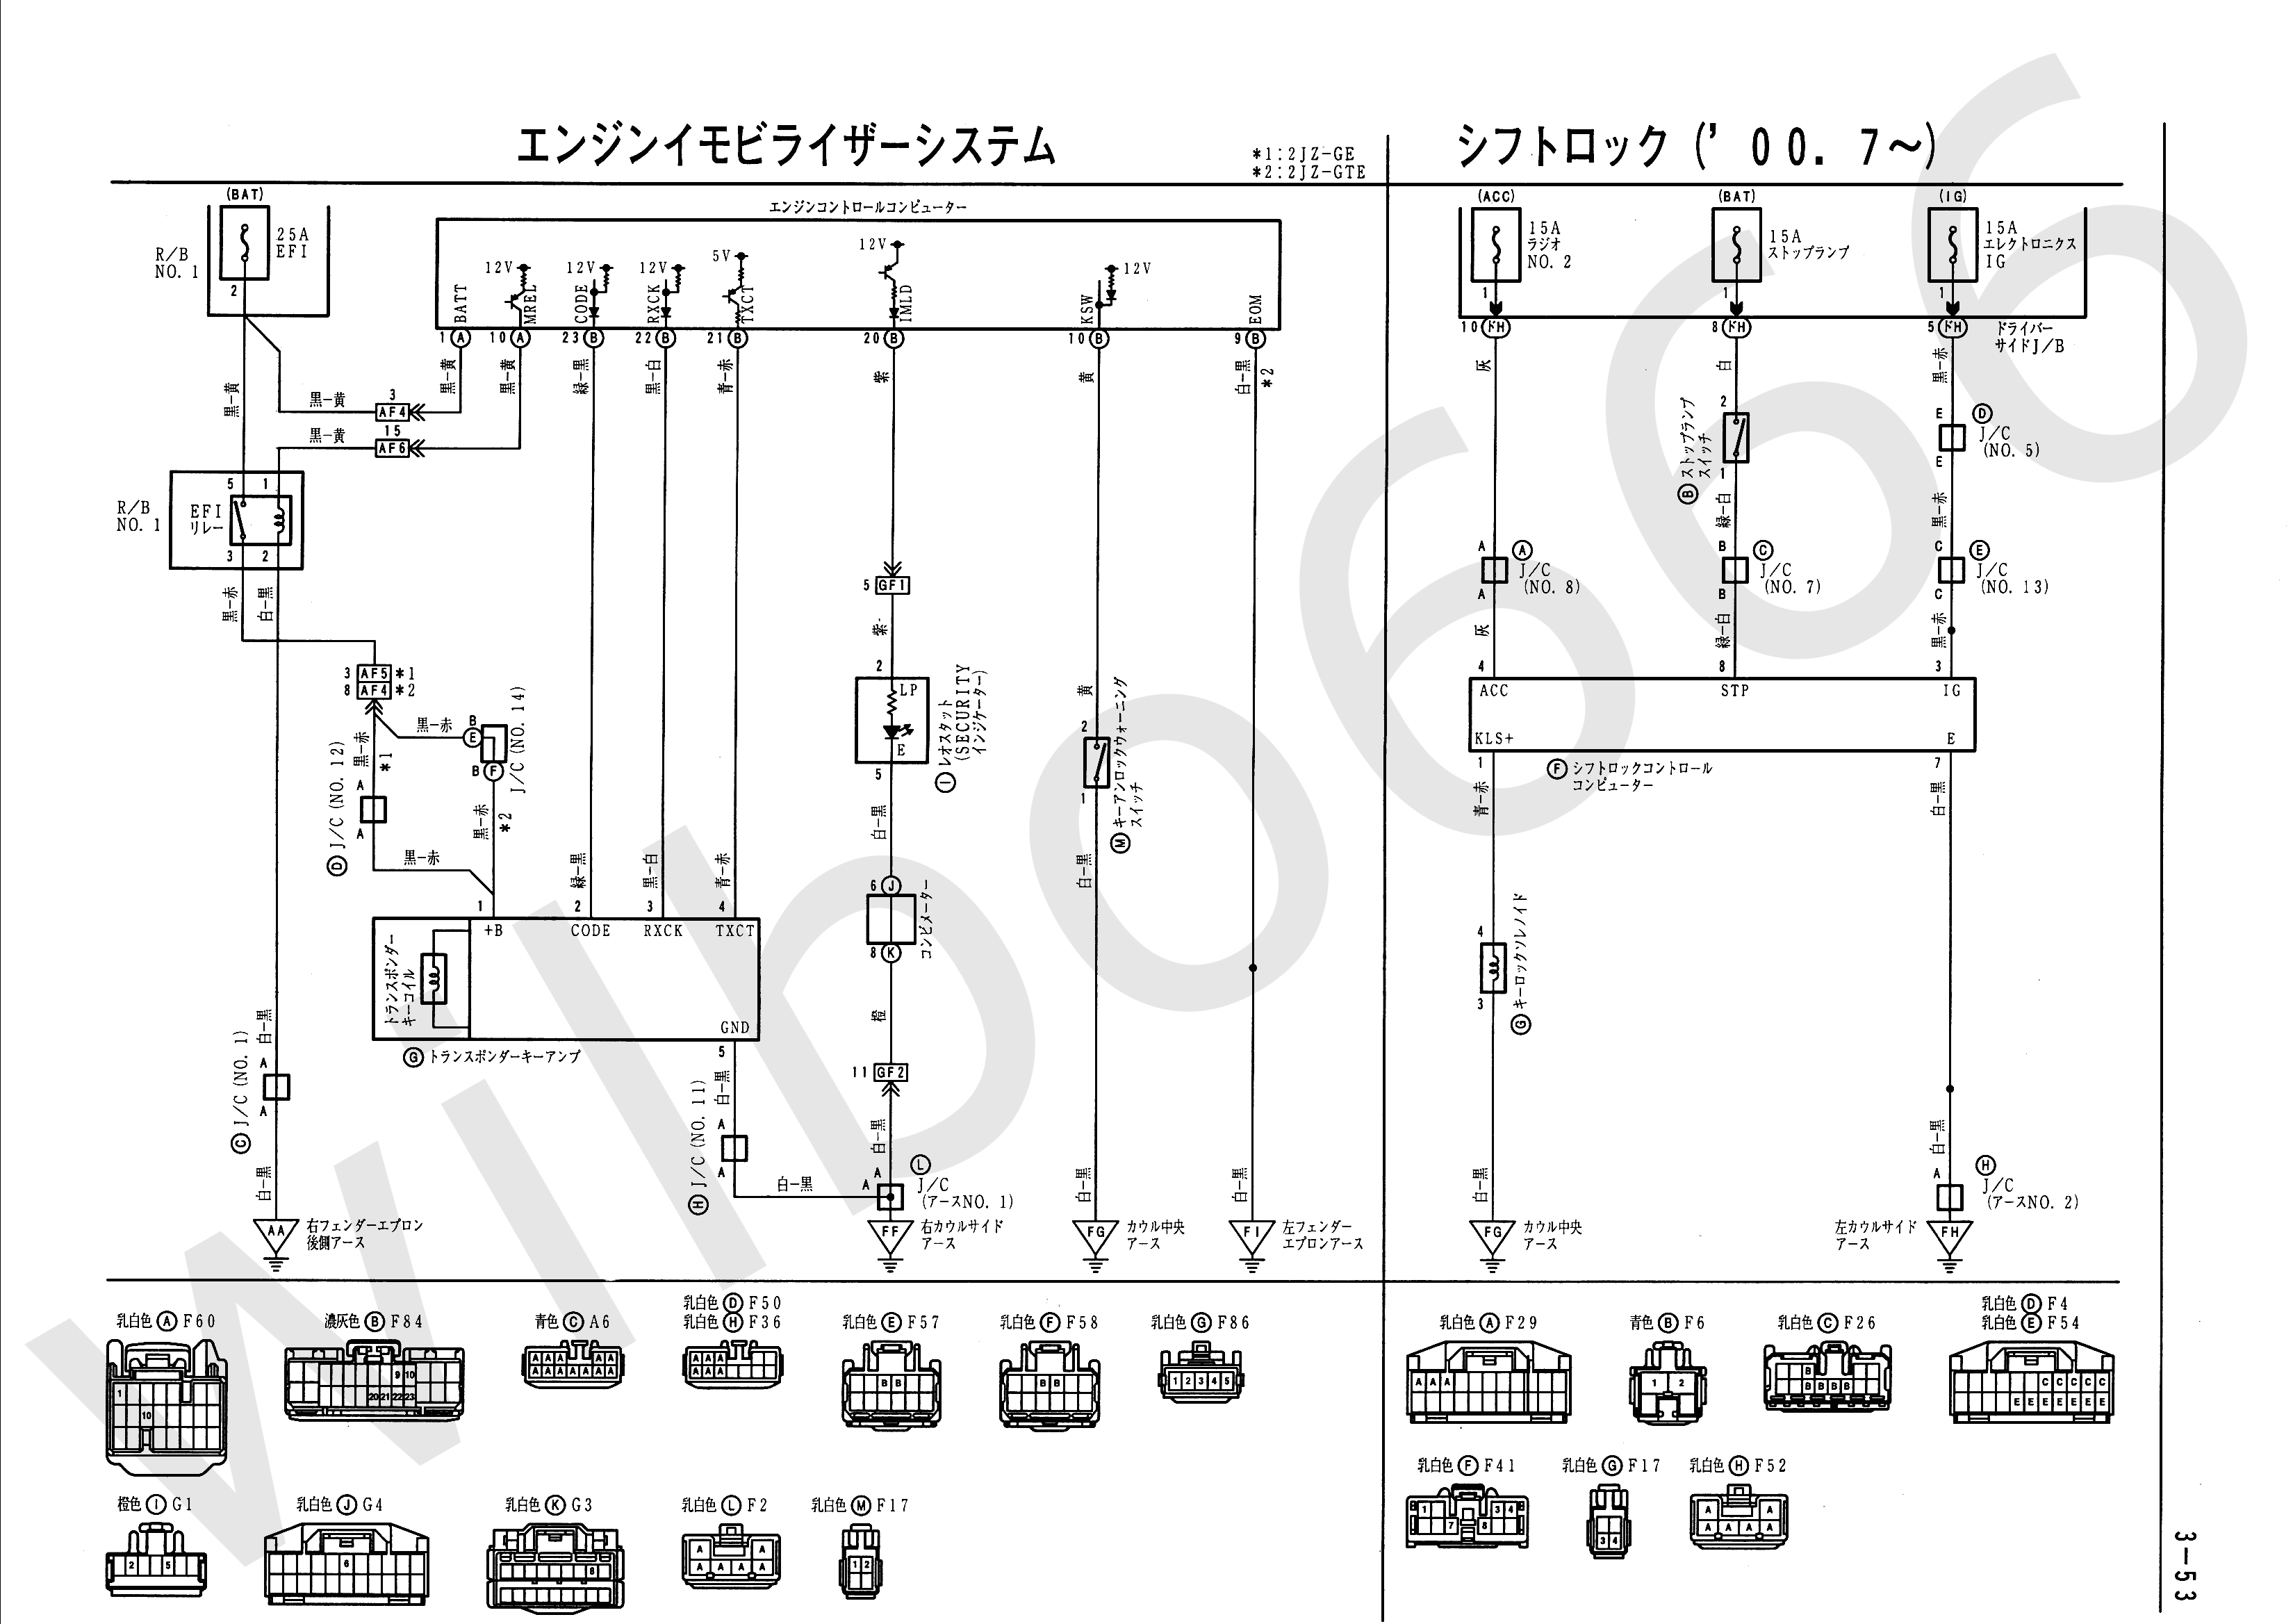 Wilbo666 / 2Jz-Gte Vvti Jzs161 Aristo Engine Wiring - Pressure Switch Wiring Diagram